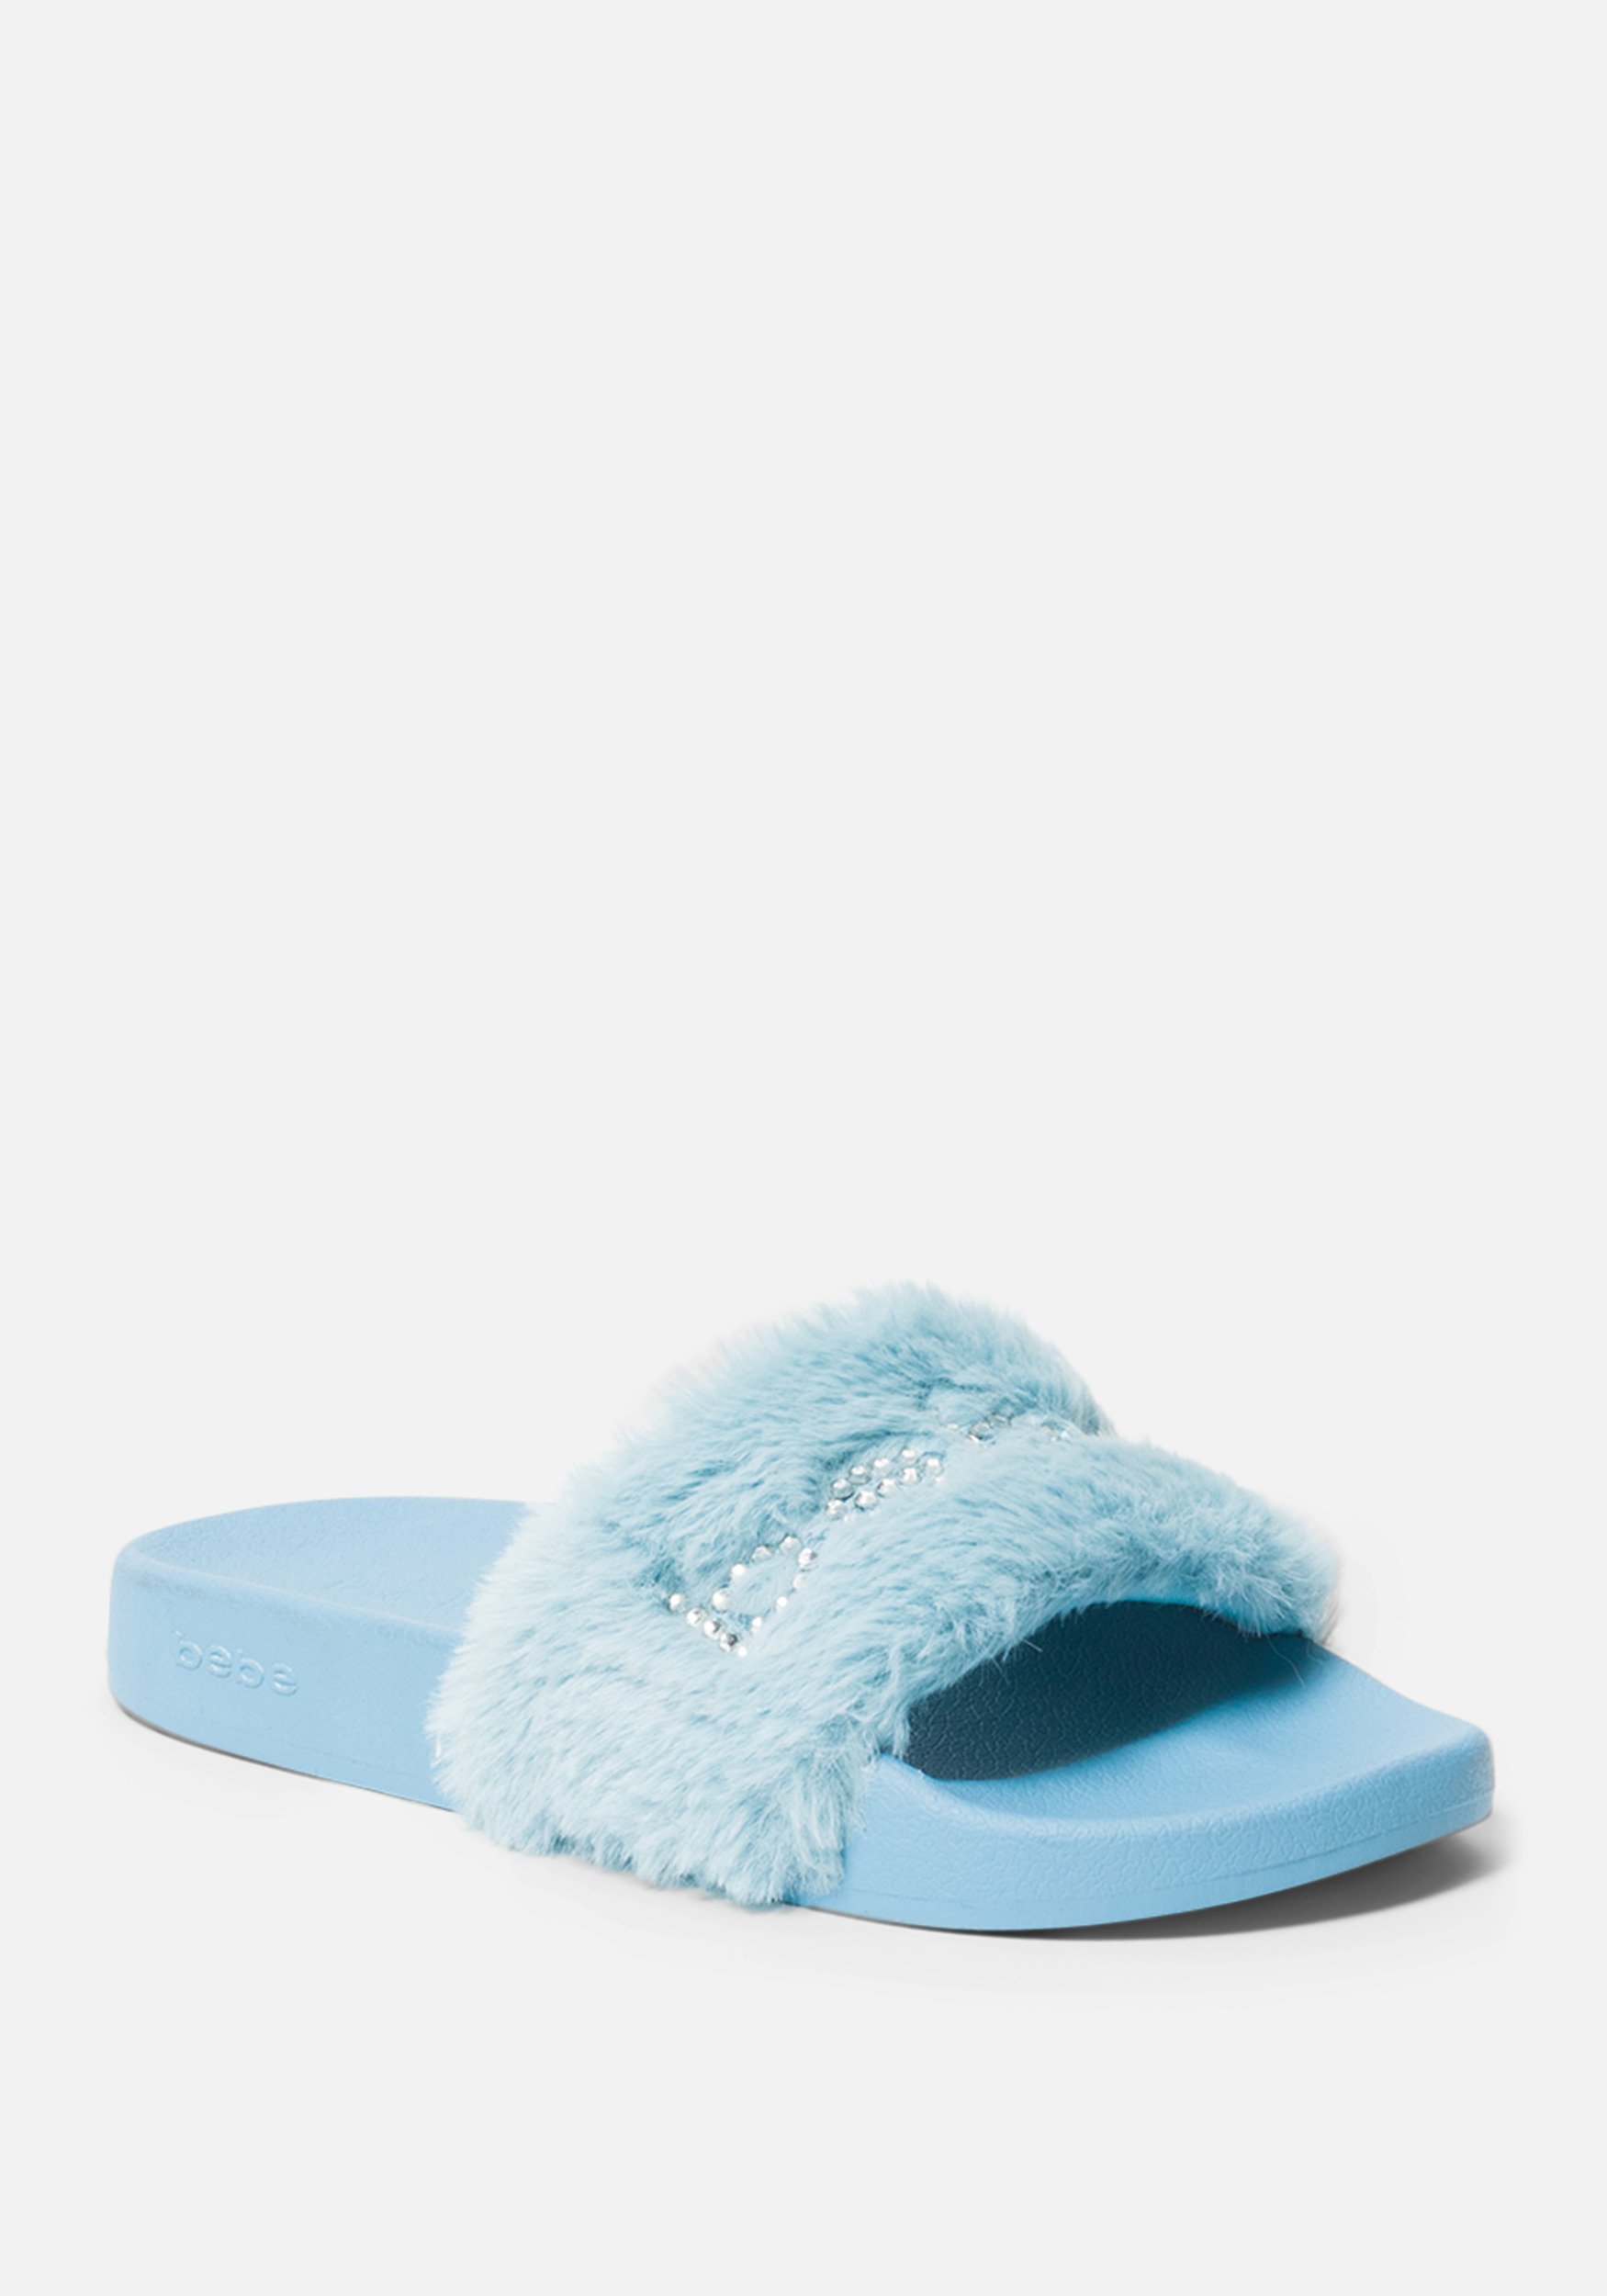 Bebe Women's Furiosa Faux Fur Slides Shoe, Size 7 in BLUE Synthetic